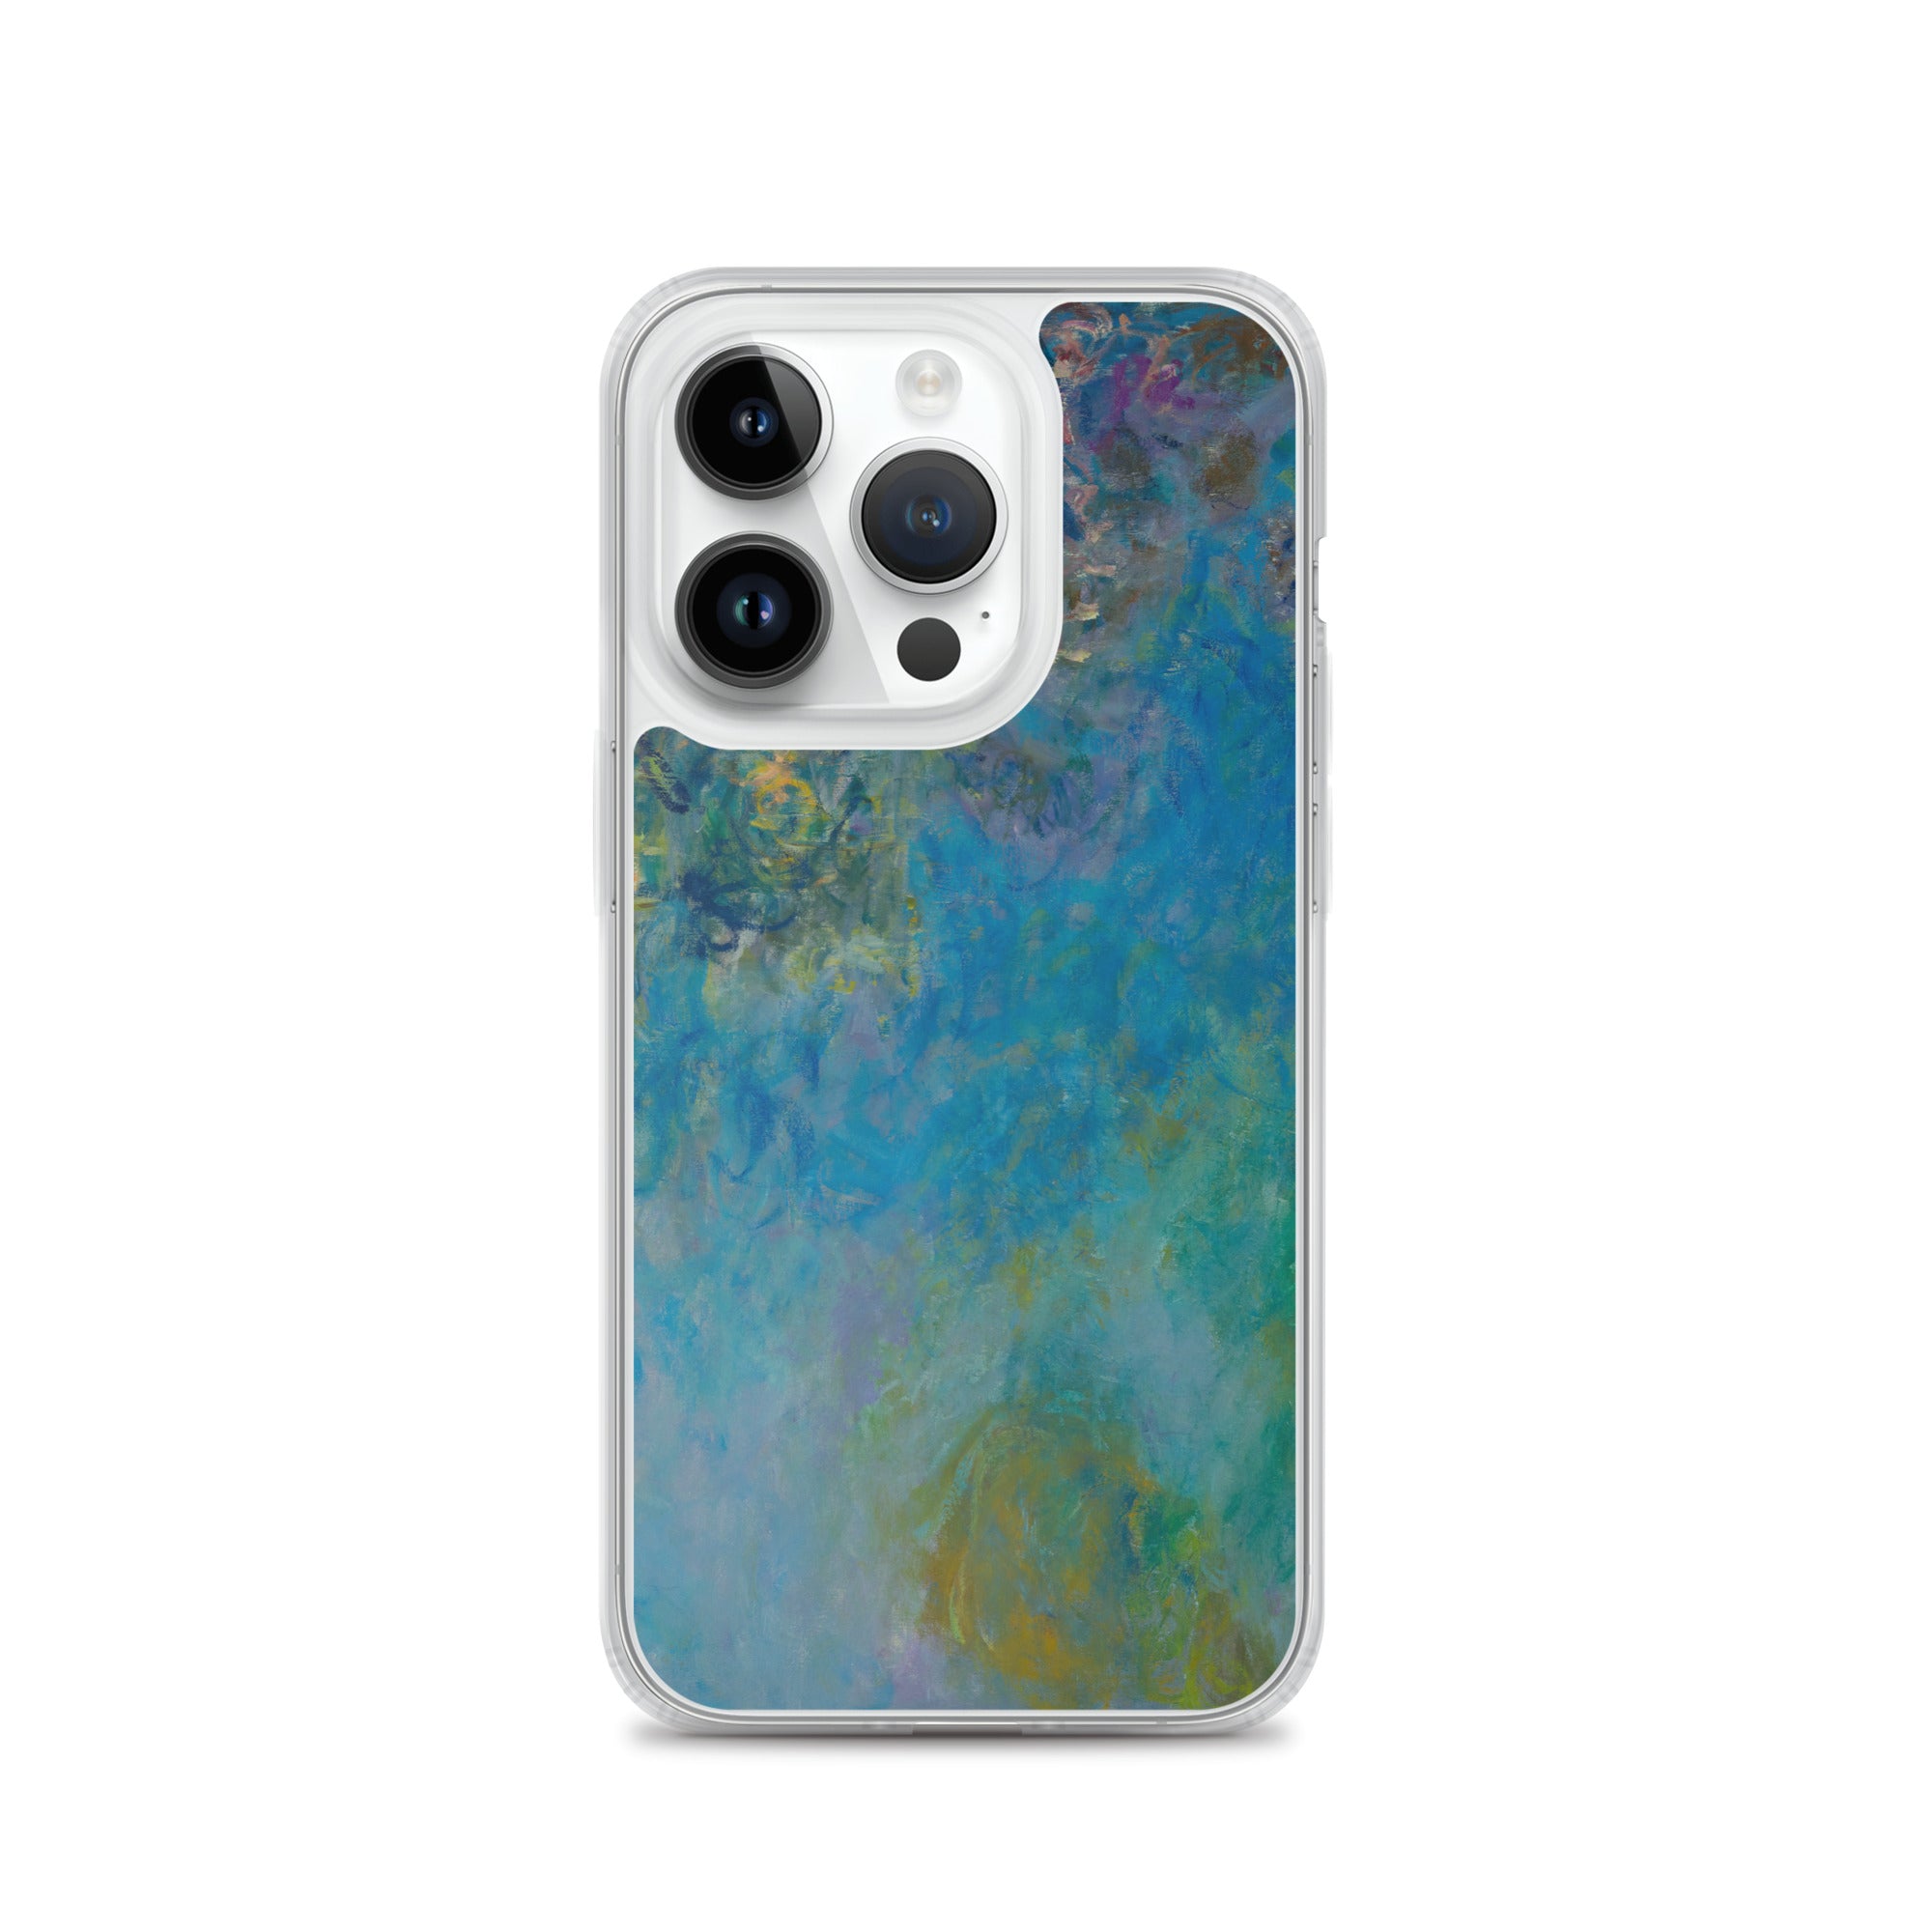 Claude Monet „Wisteria“ Berühmtes Gemälde iPhone® Hülle | Transparente Kunsthülle für iPhone®